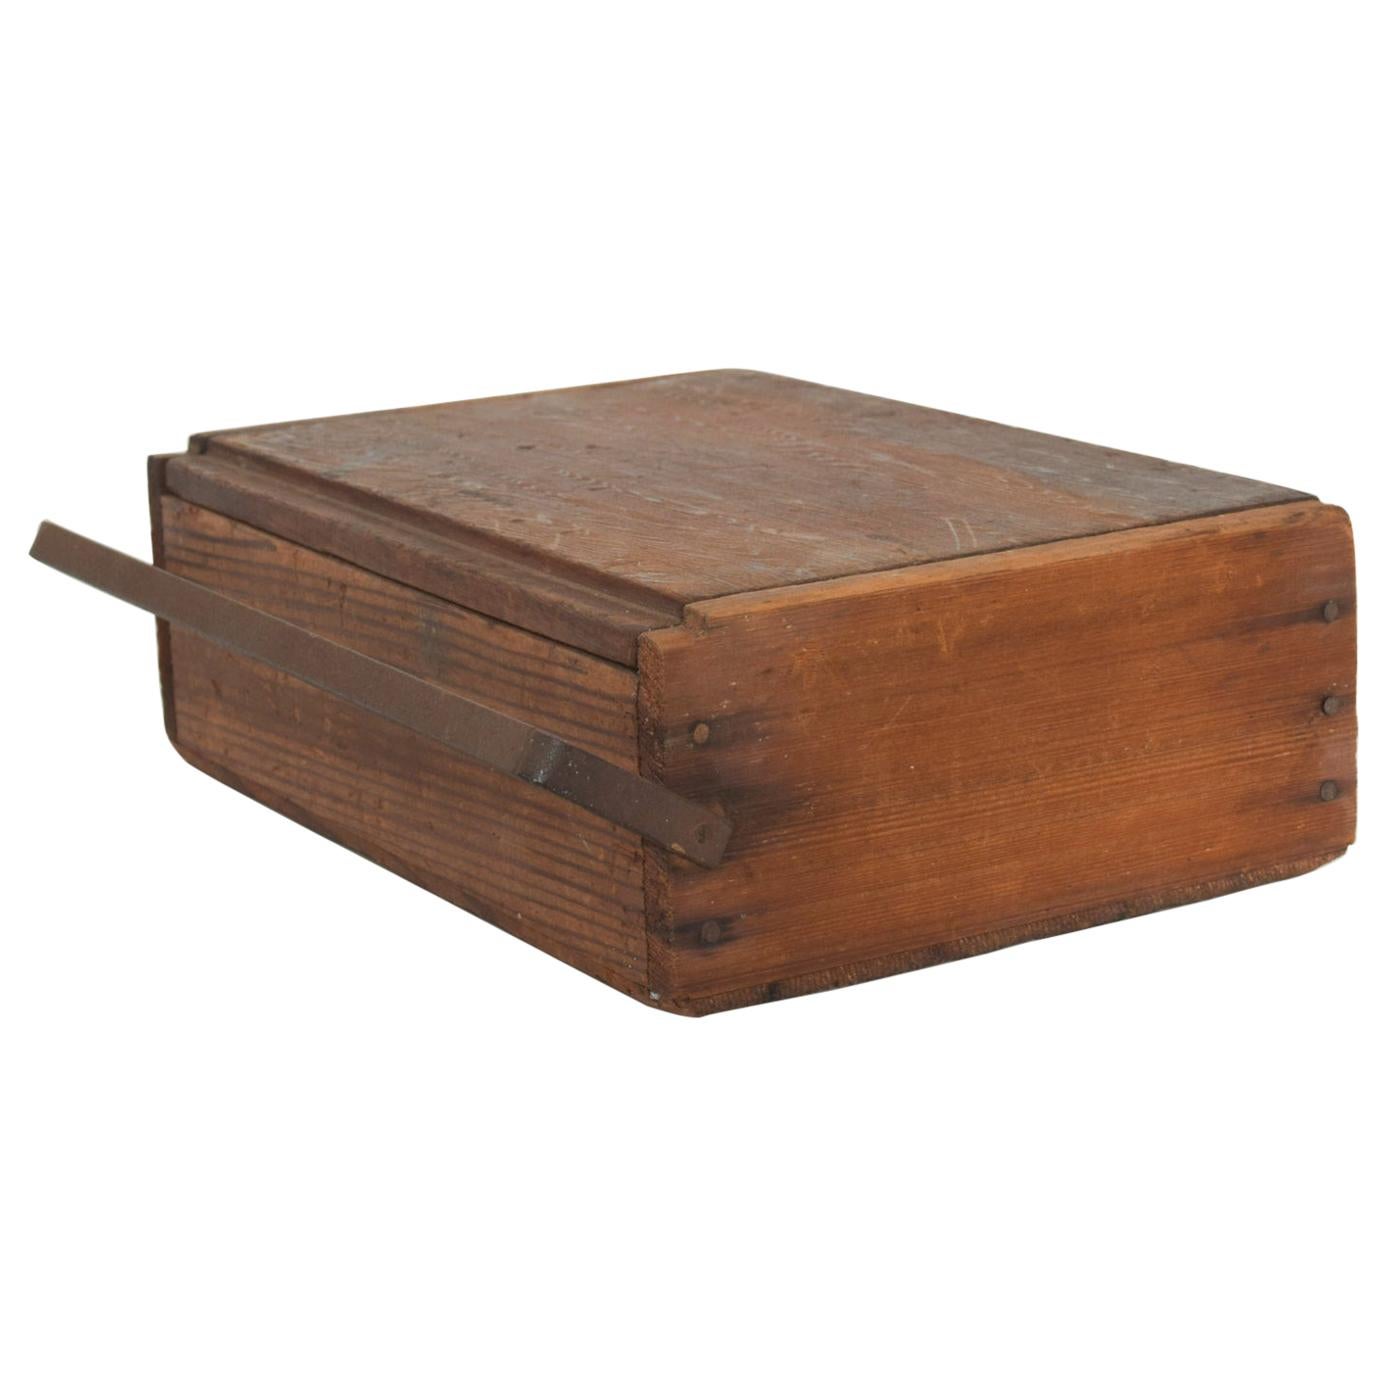 Decorative Antique Wood Storage Box for Cash Secret Stash Metal Handle Closure